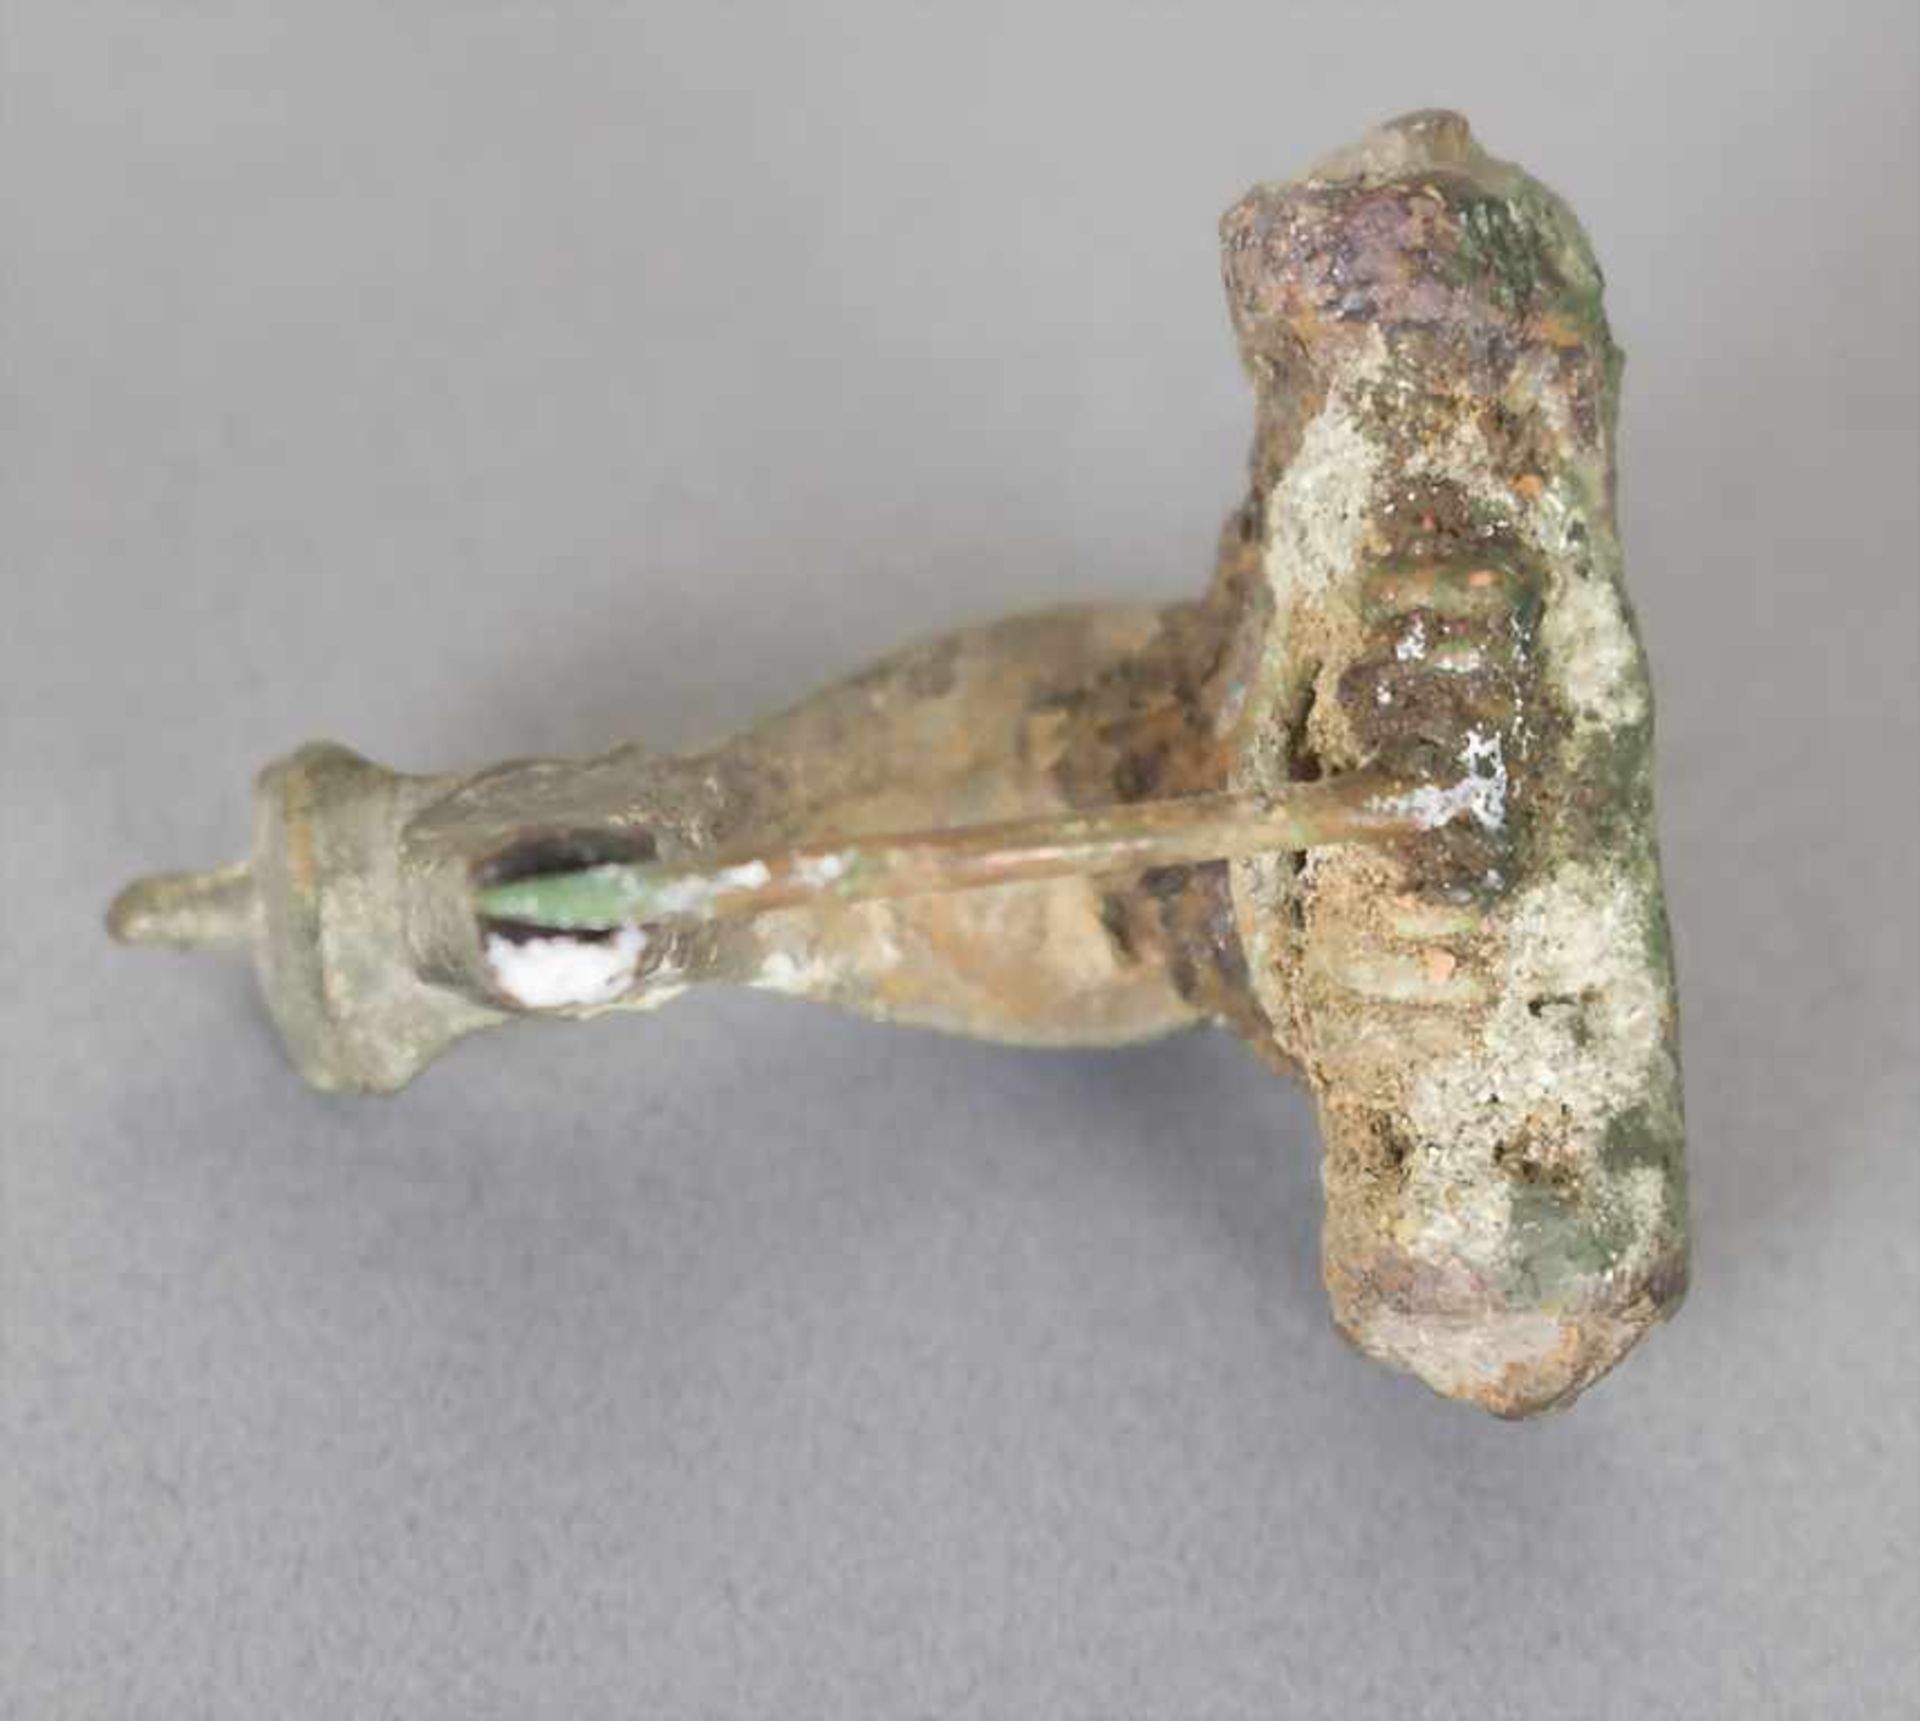 Römische Fibel / A Roman fibulaMaterial: Bronze,Länge: 2,7 cm,Zustand: gut, alt restauriert, - Bild 5 aus 5